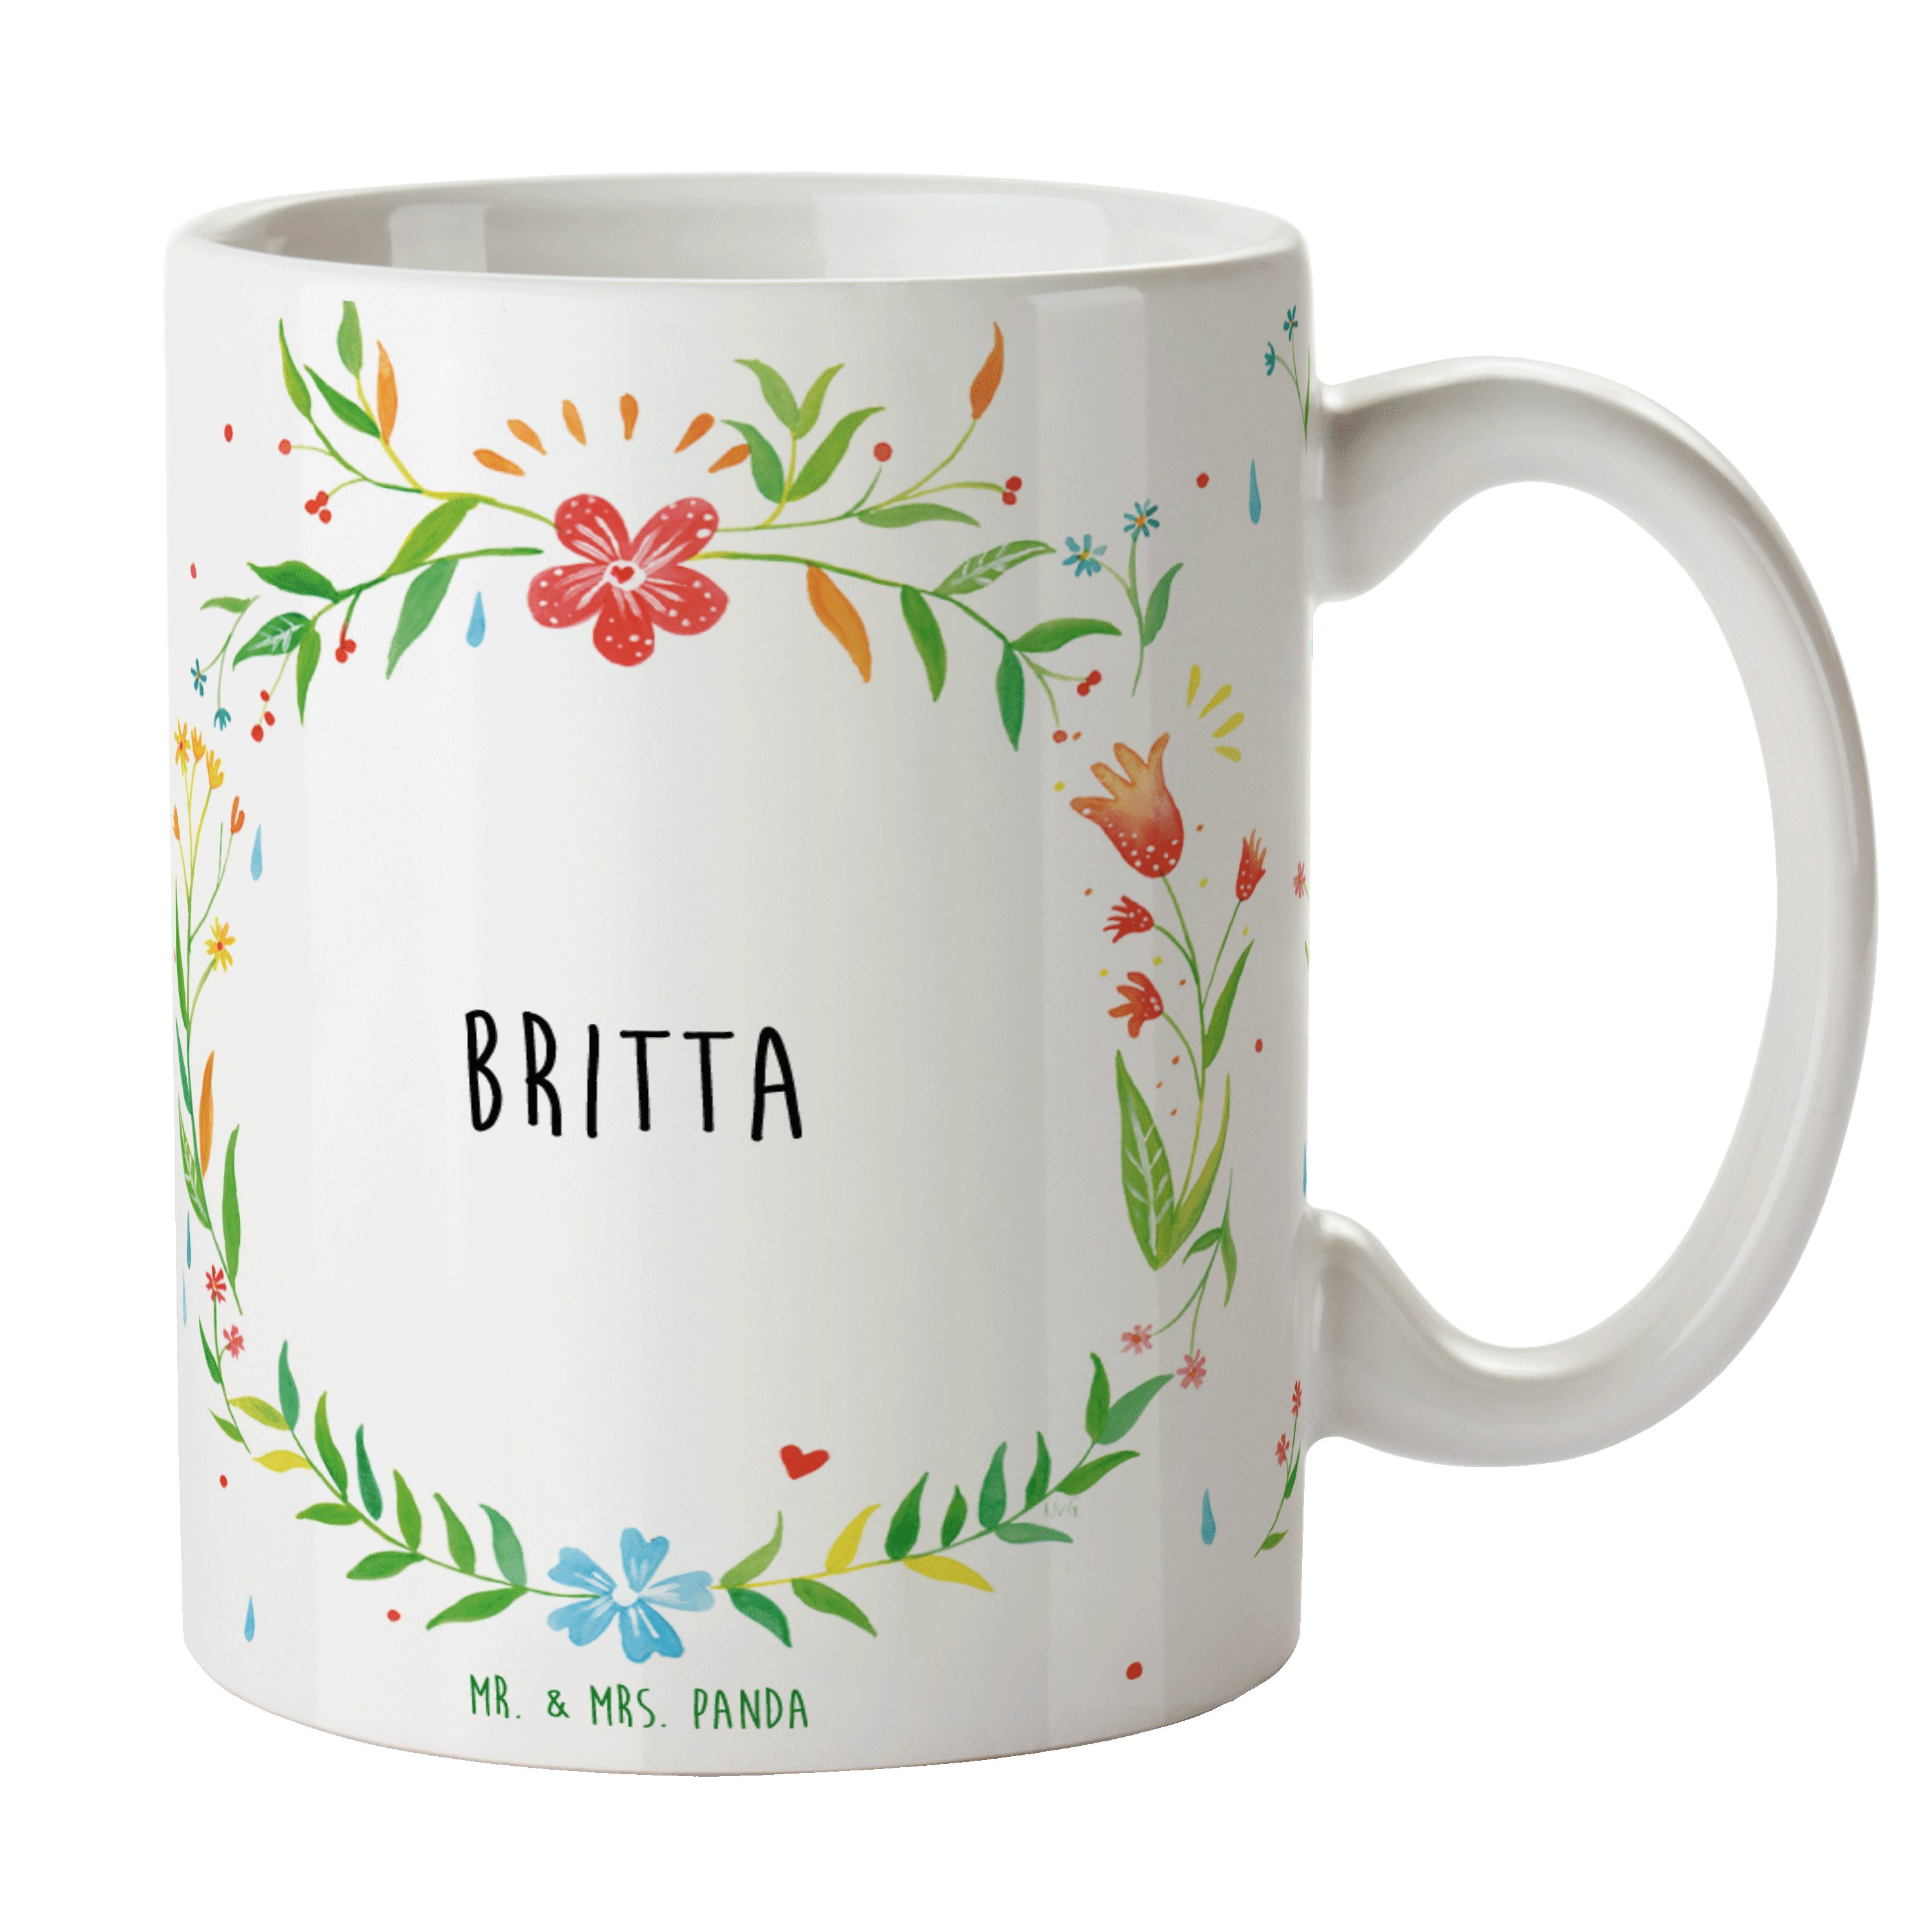 Mr. & Mrs. Panda Tasse Britta - Geschenk, Tasse Sprüche, Tasse Motive, Geschenk Tasse, Büro, Keramik